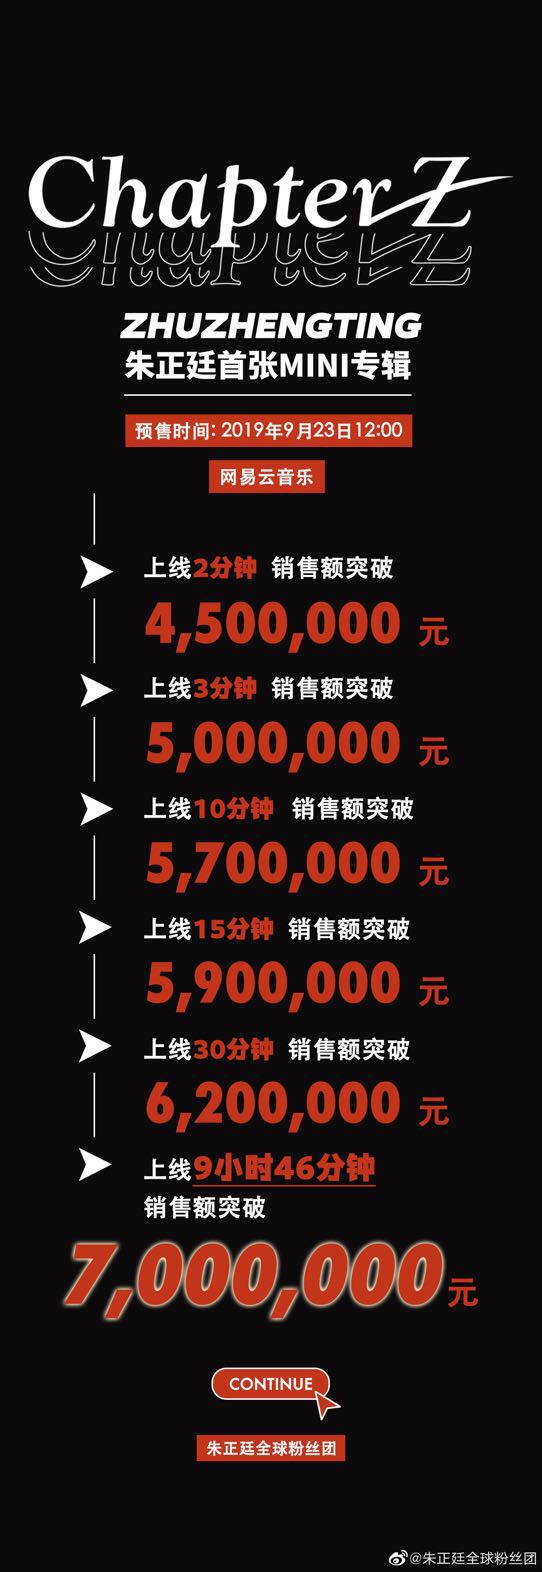 热度爆炸！朱正廷首张MINI专辑网易云音乐预售十小时销量破百万张